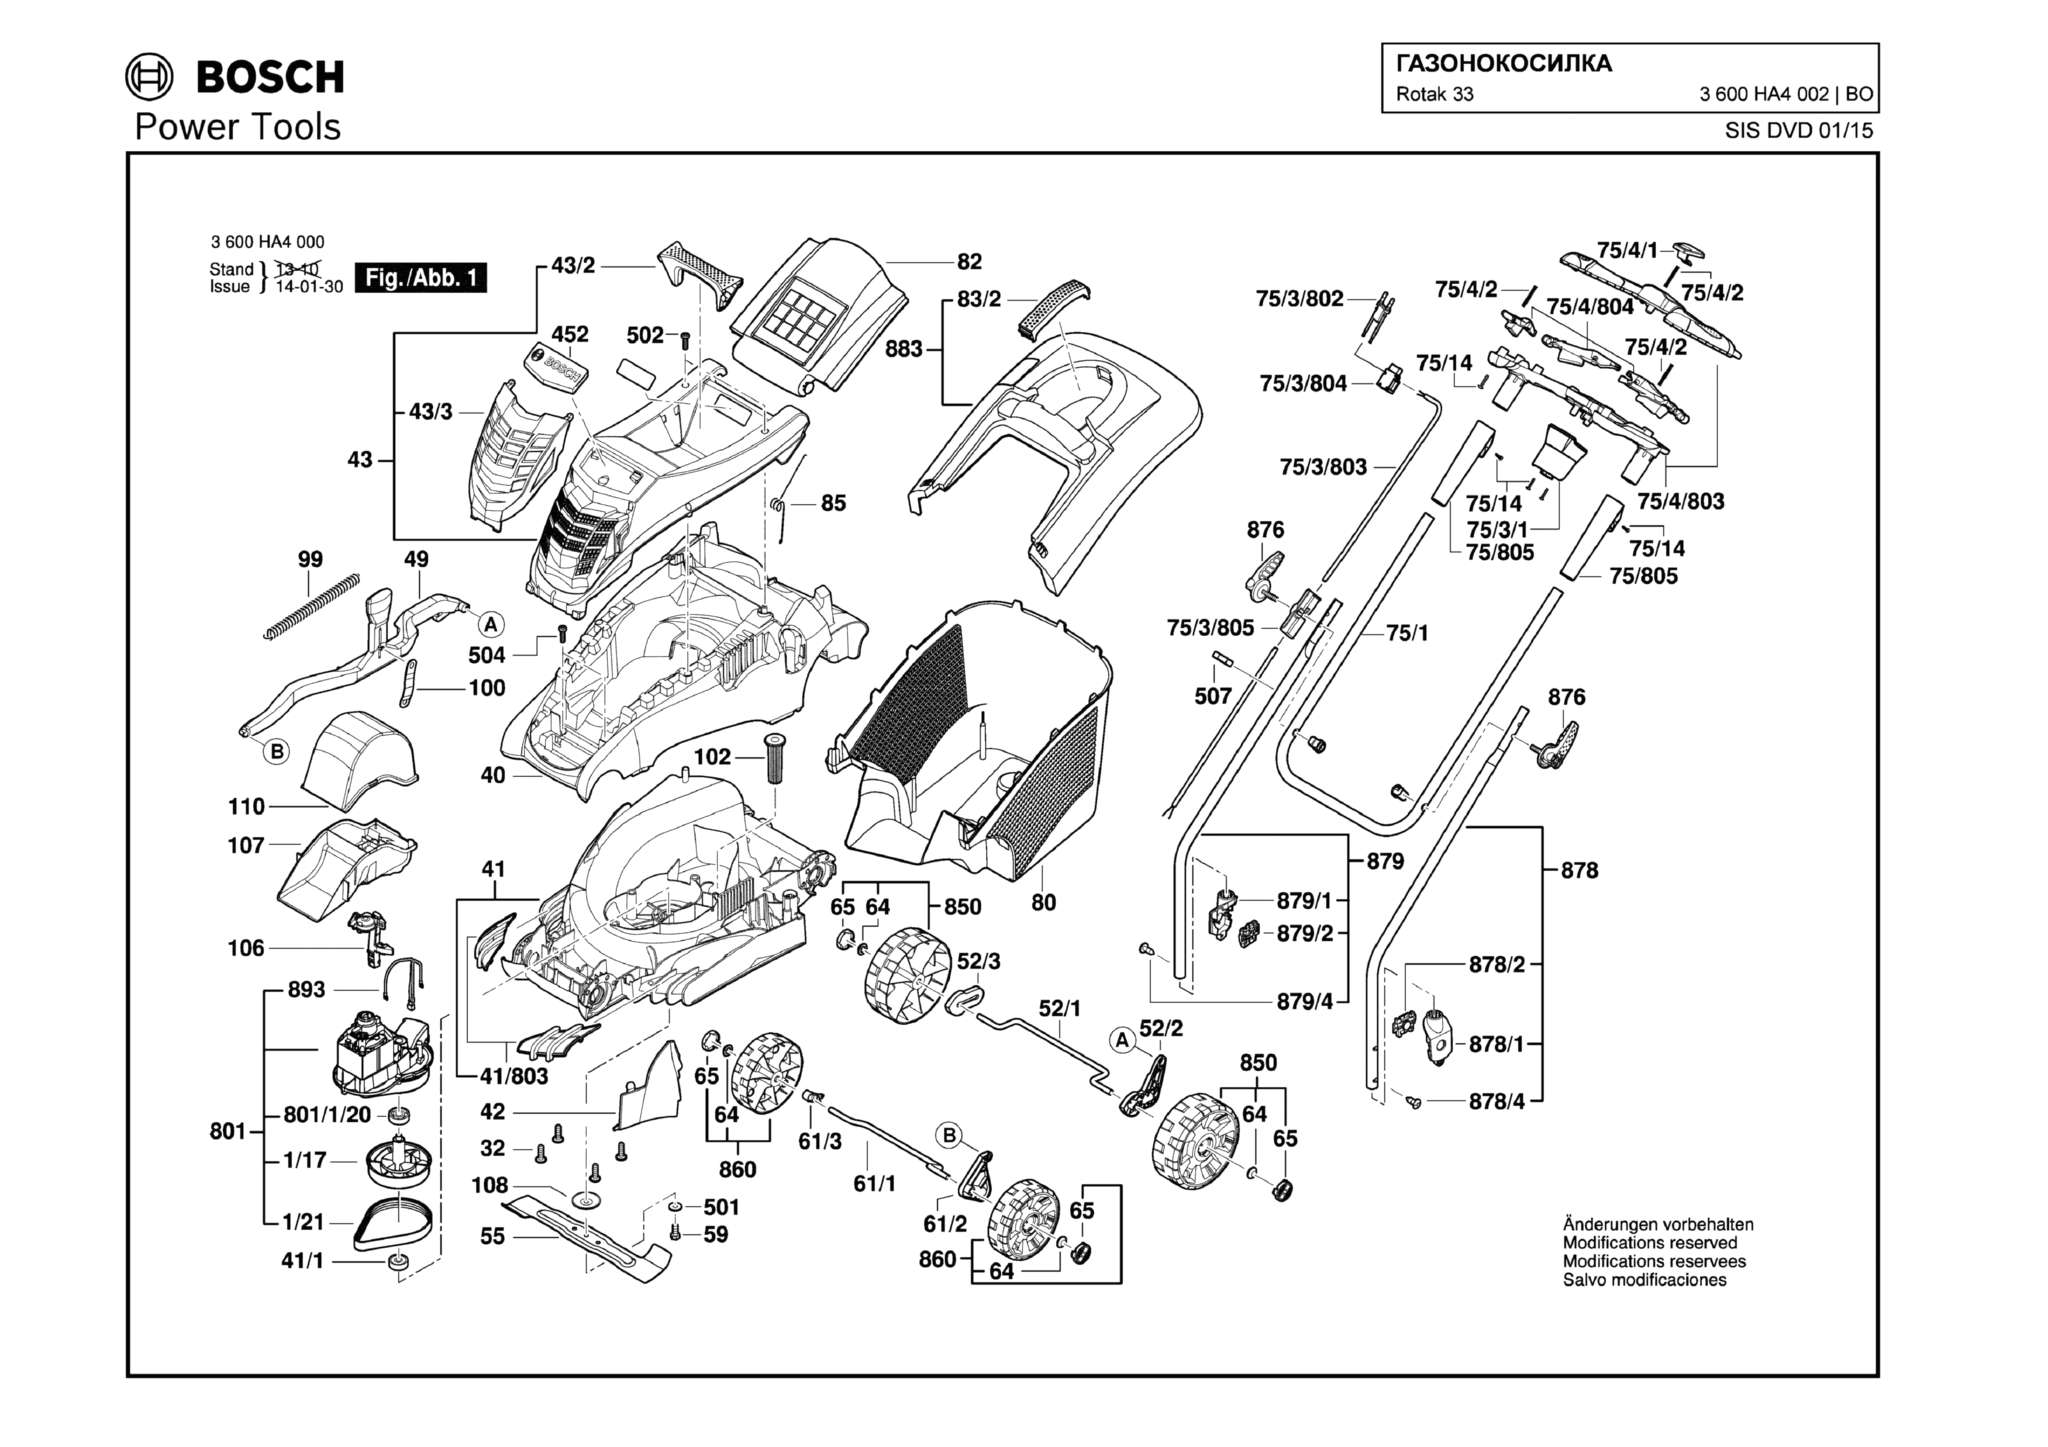 Запчасти, схема и деталировка Bosch ROTAK 33 (ТИП 3600HA4002)